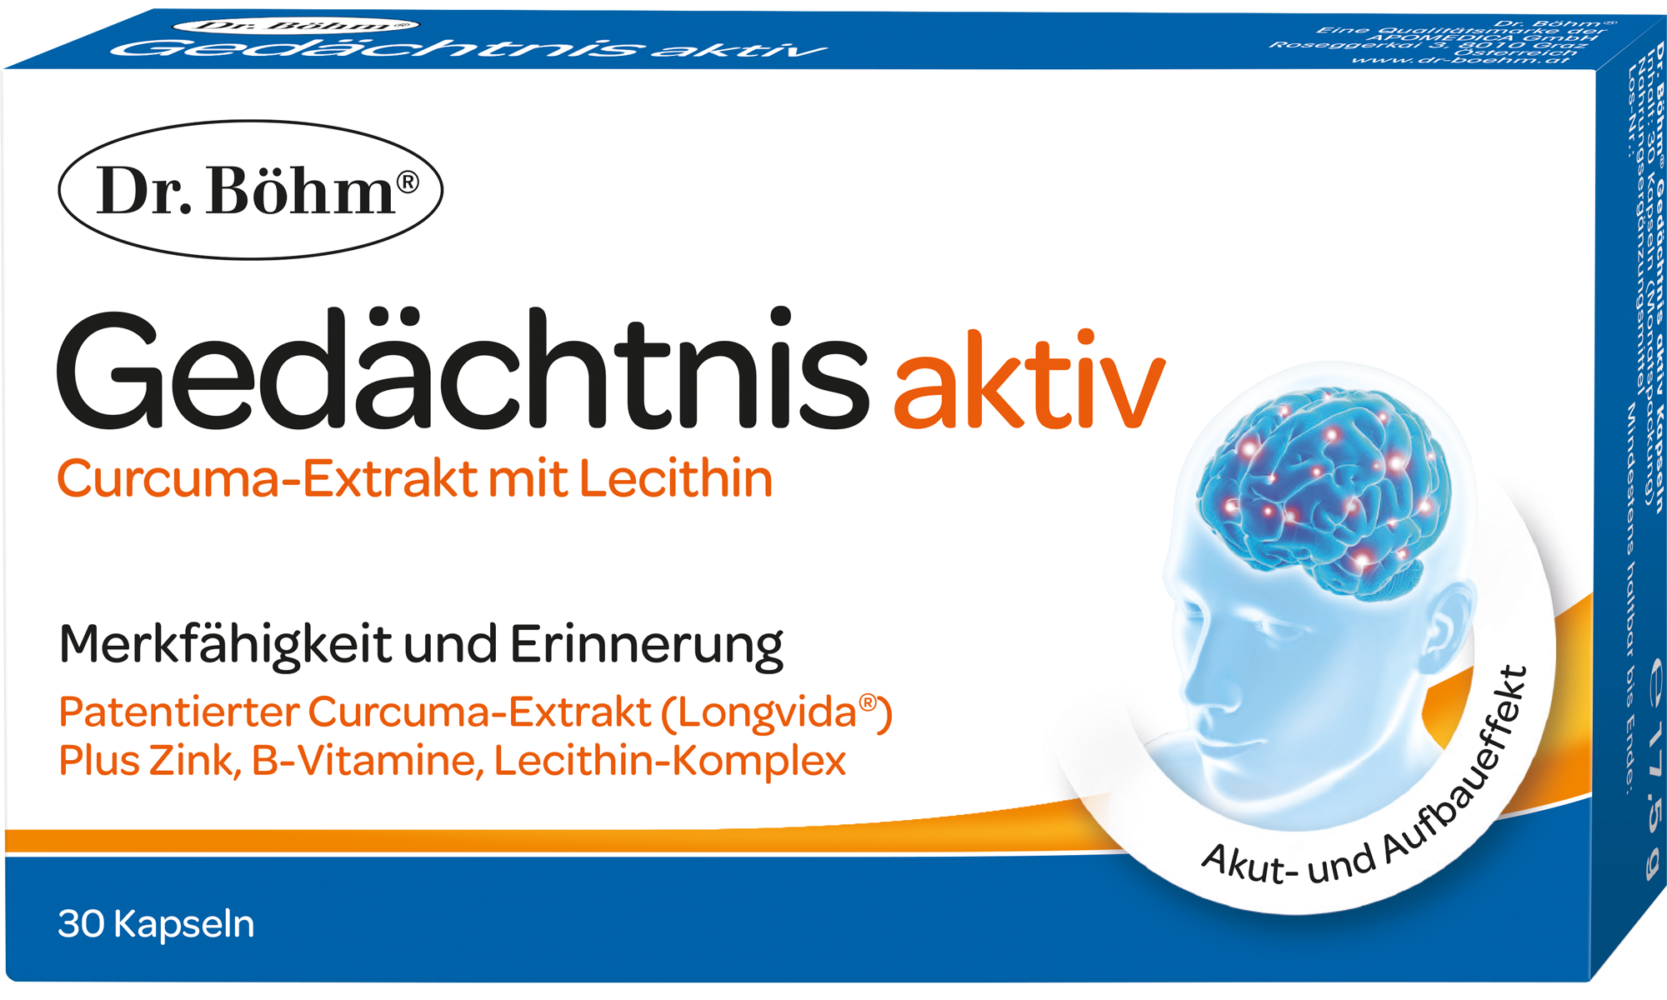 Dr. Böhm® Gedächtnis aktiv Kapseln - die Innovation für ein gutes Gedächtnis und gesunde Hirnalterung, Nahrungsergänzungsmittel